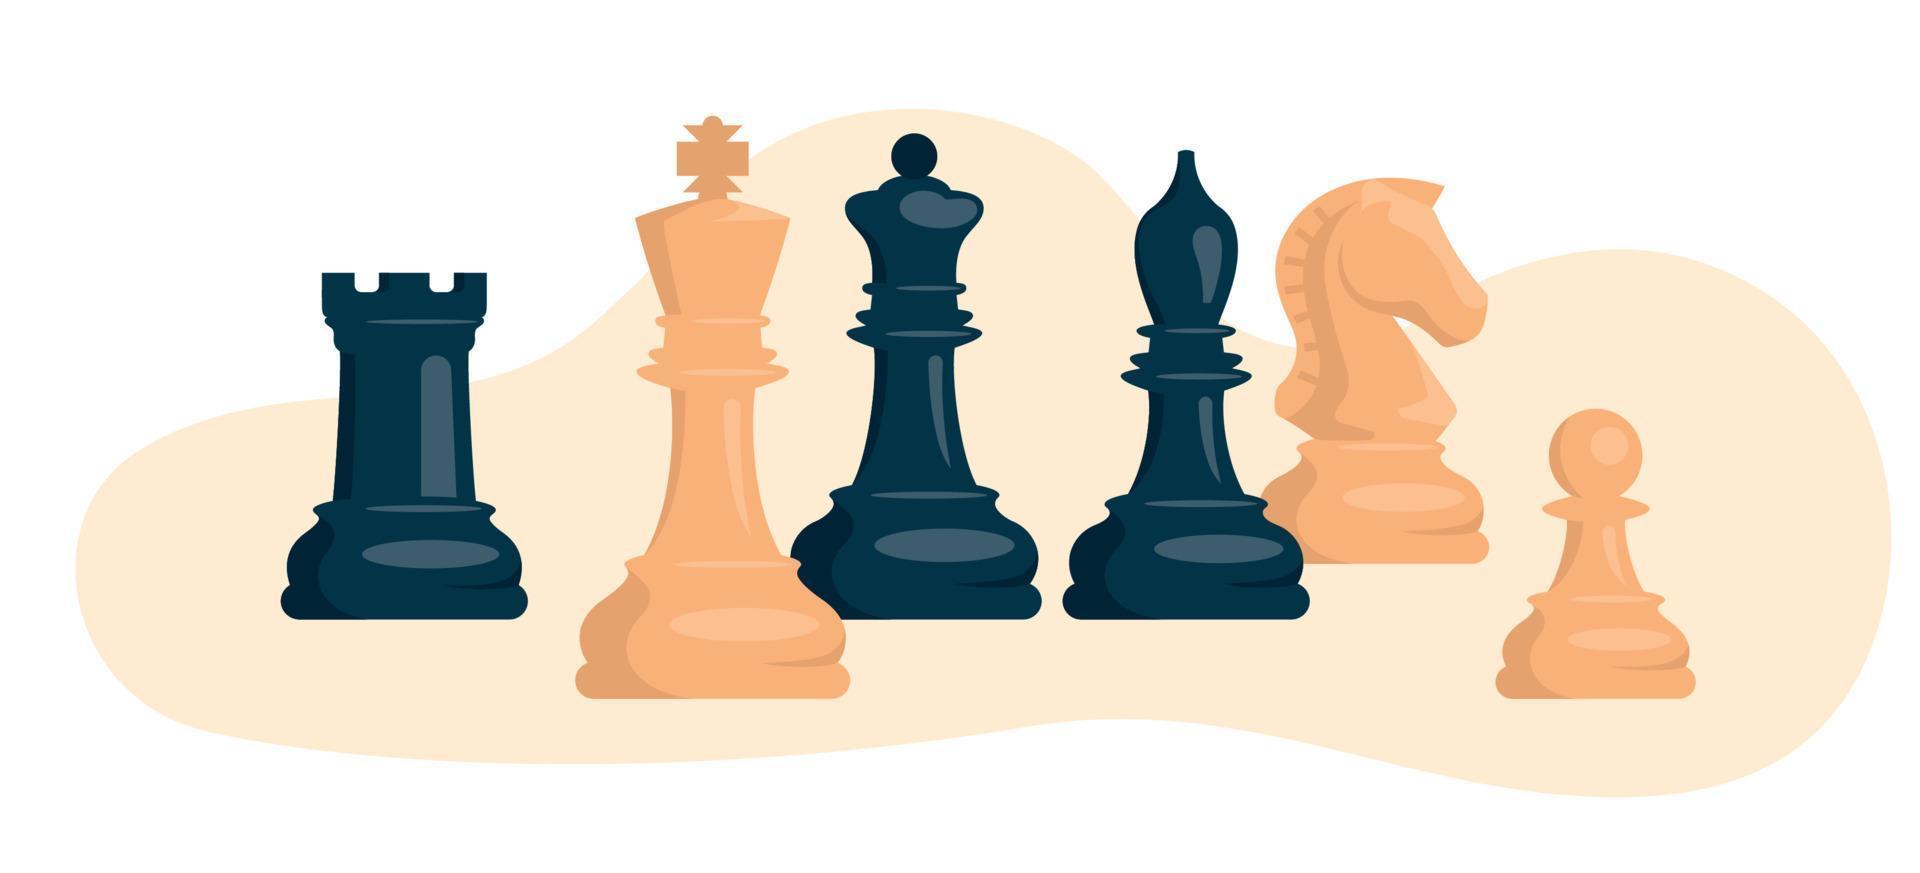 xadrez. conjunto de peças de xadrez brancas e pretas. cavalo, torre, peão,  bispo, rei, rainha. imagem vetorial. 8714355 Vetor no Vecteezy